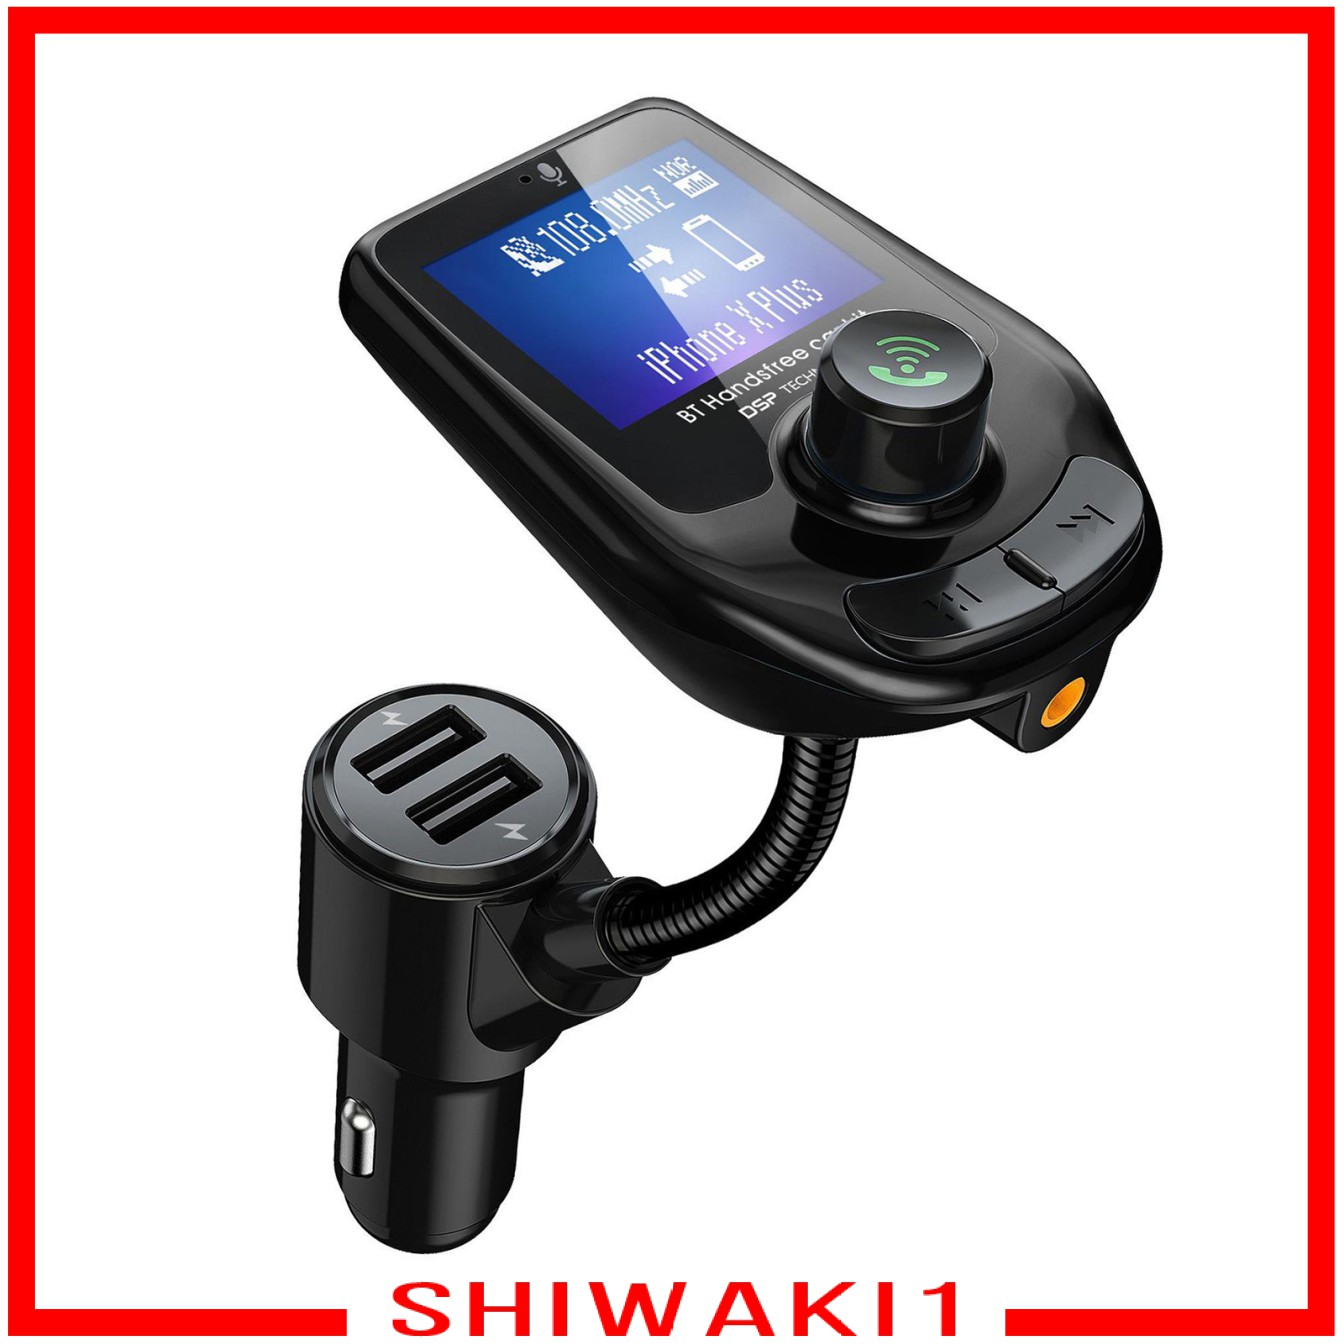 Bộ Thu Phát Bluetooth Fm Màn Hình 3.0 Inch Shiwaki1 Chuyên Dụng Cho Xe Hơi